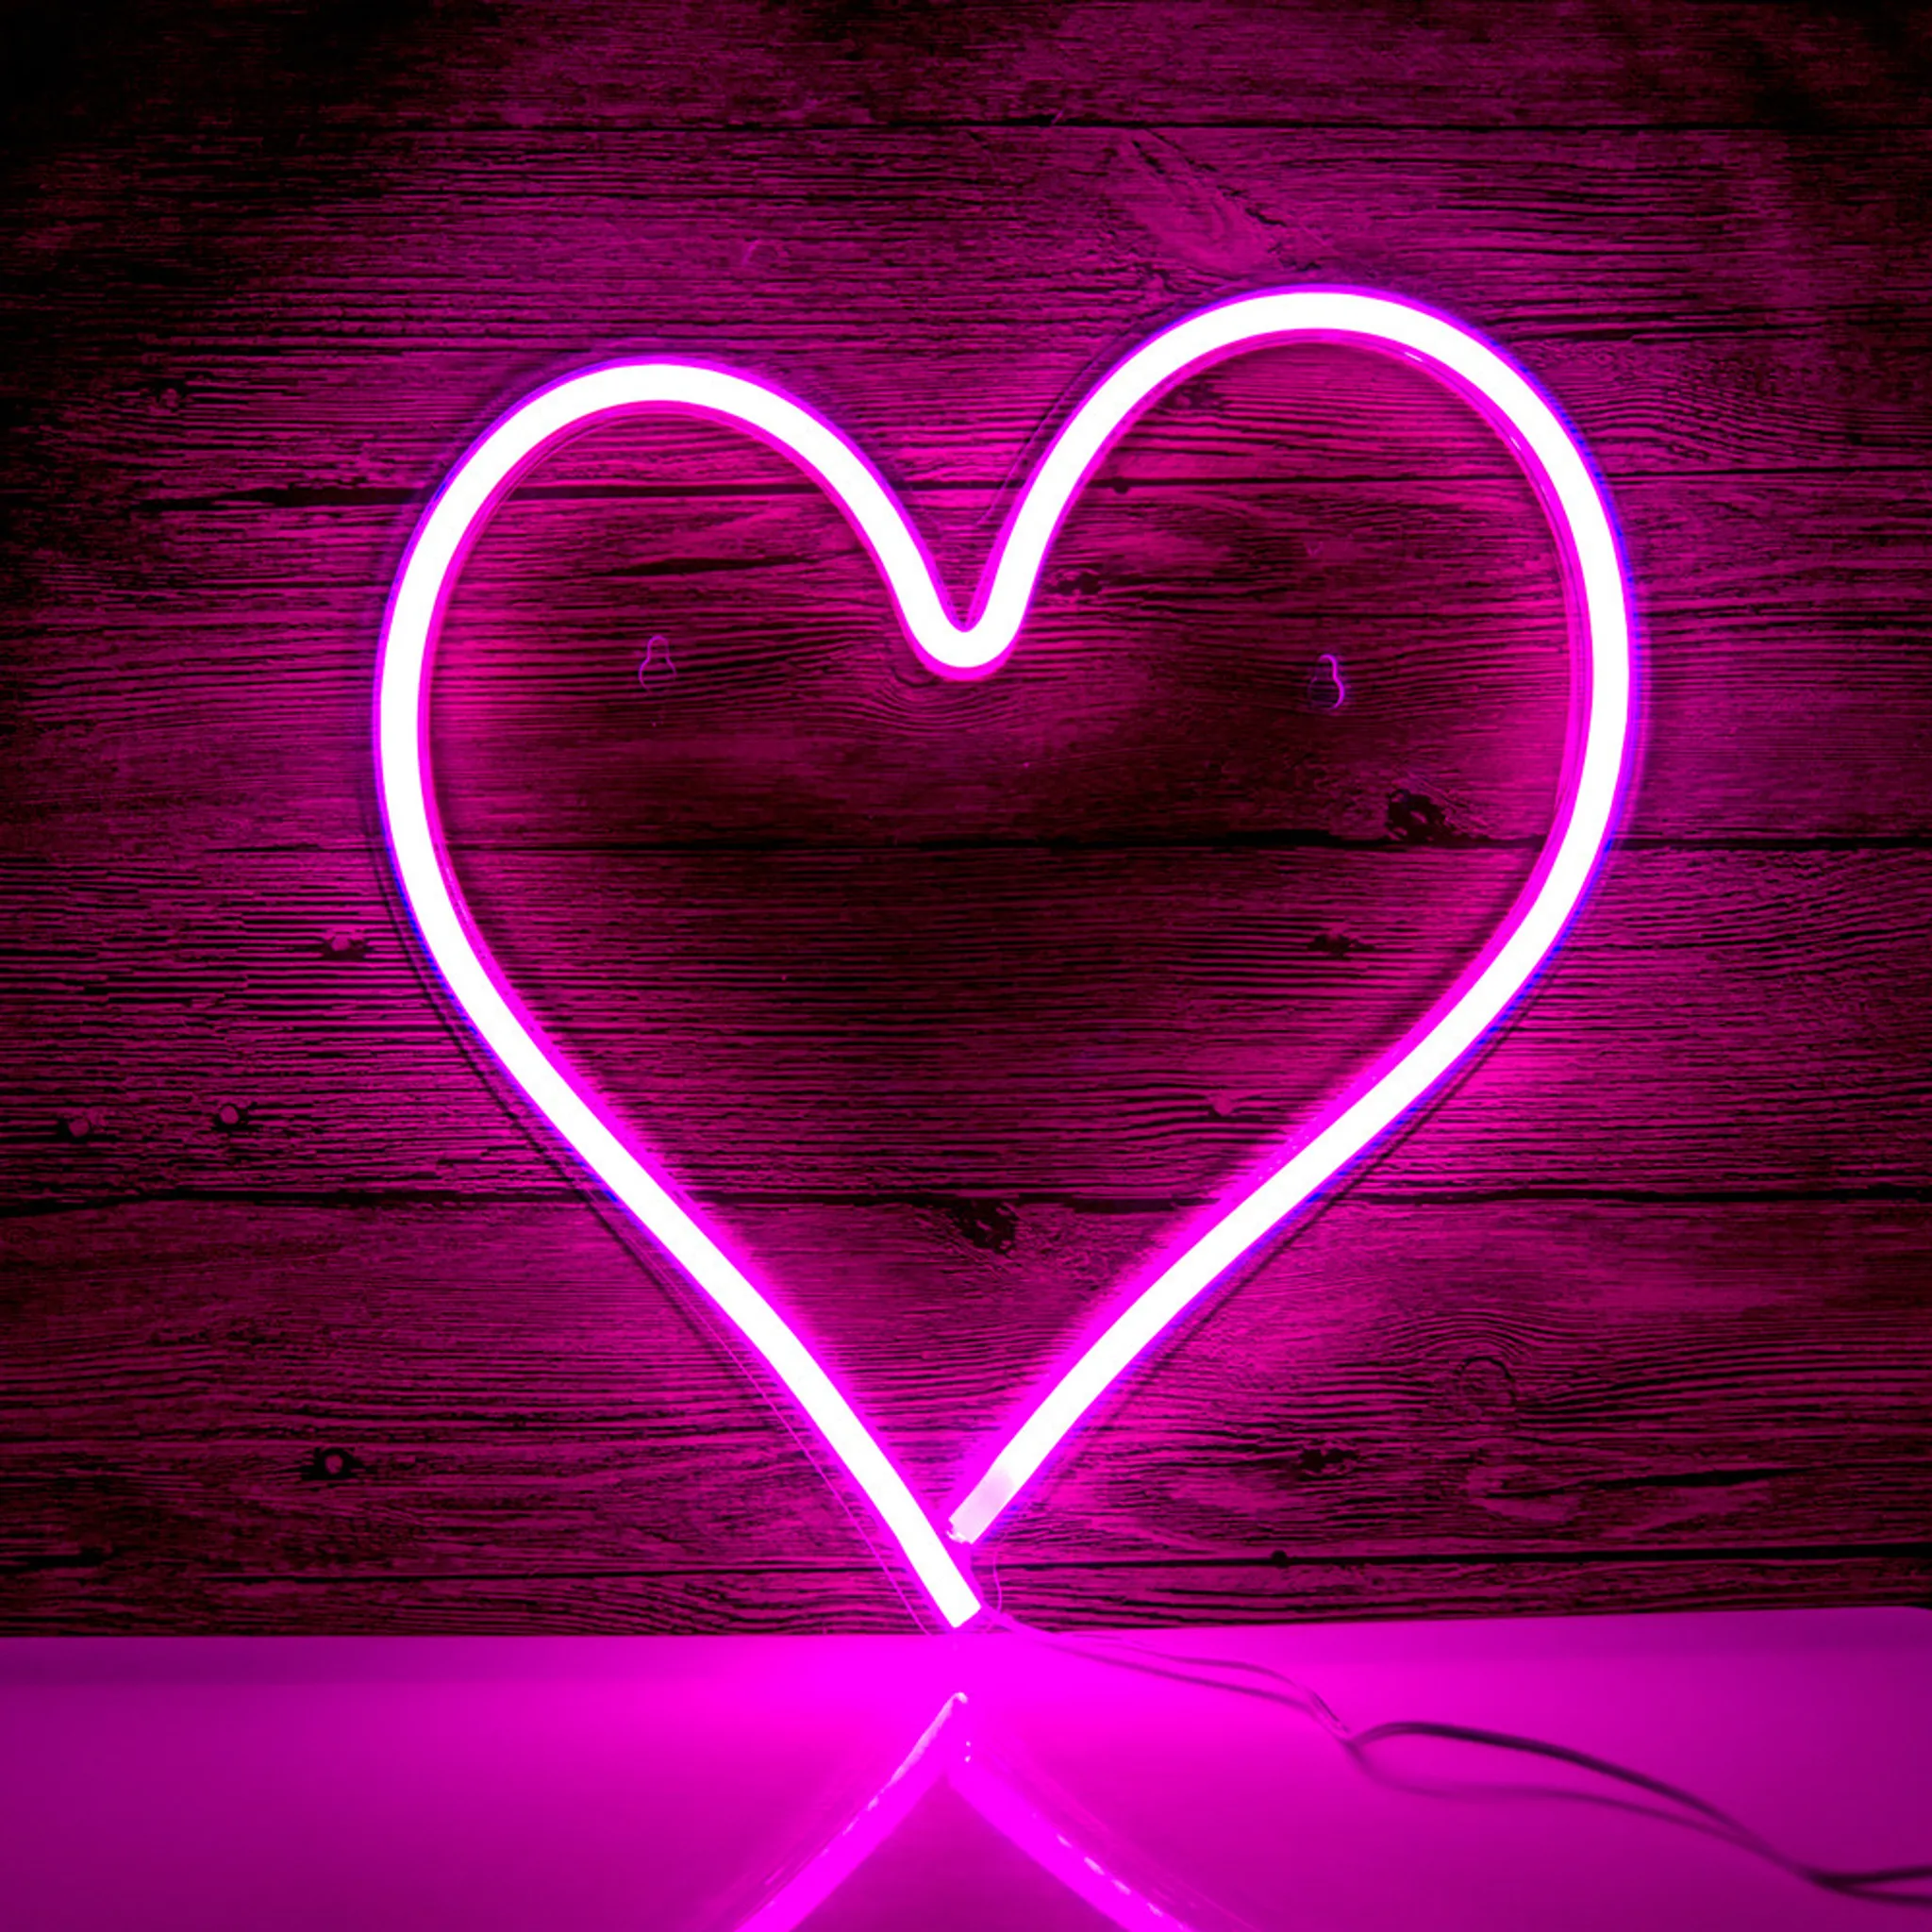 LED Wand Lampe Dekoration Neon Licht Schild Wohn Zimmer Party Beleuchtung USB  Leuchte pink